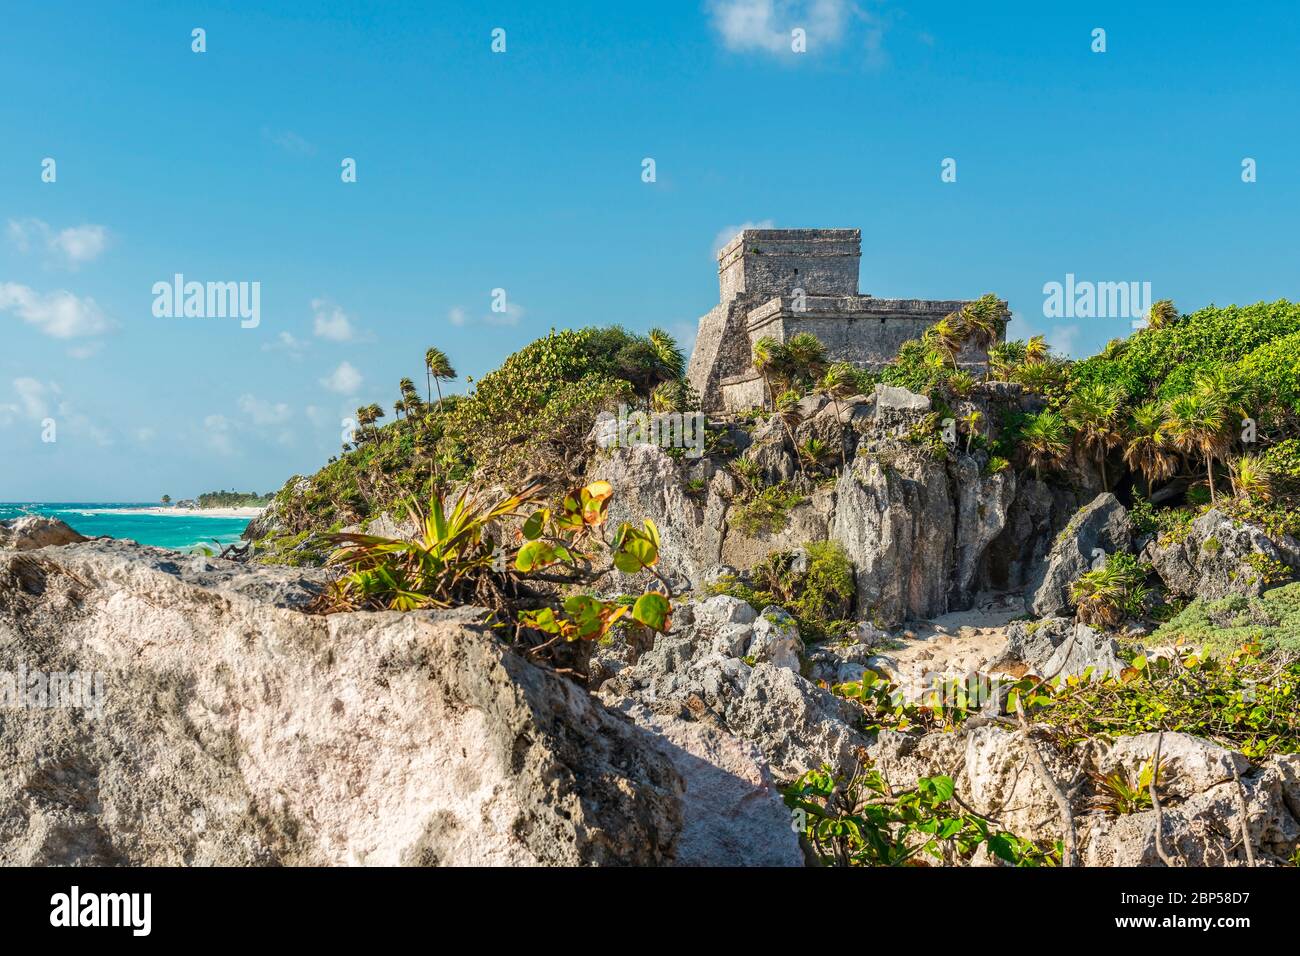 Die Maya-Ruine von Tulum und ihr Strand am Karibischen Meer, Quintana Roo State, Yucatan Peninsula, Mexiko. Vordergrundbau unscharf, scharfes Gebäude. Stockfoto